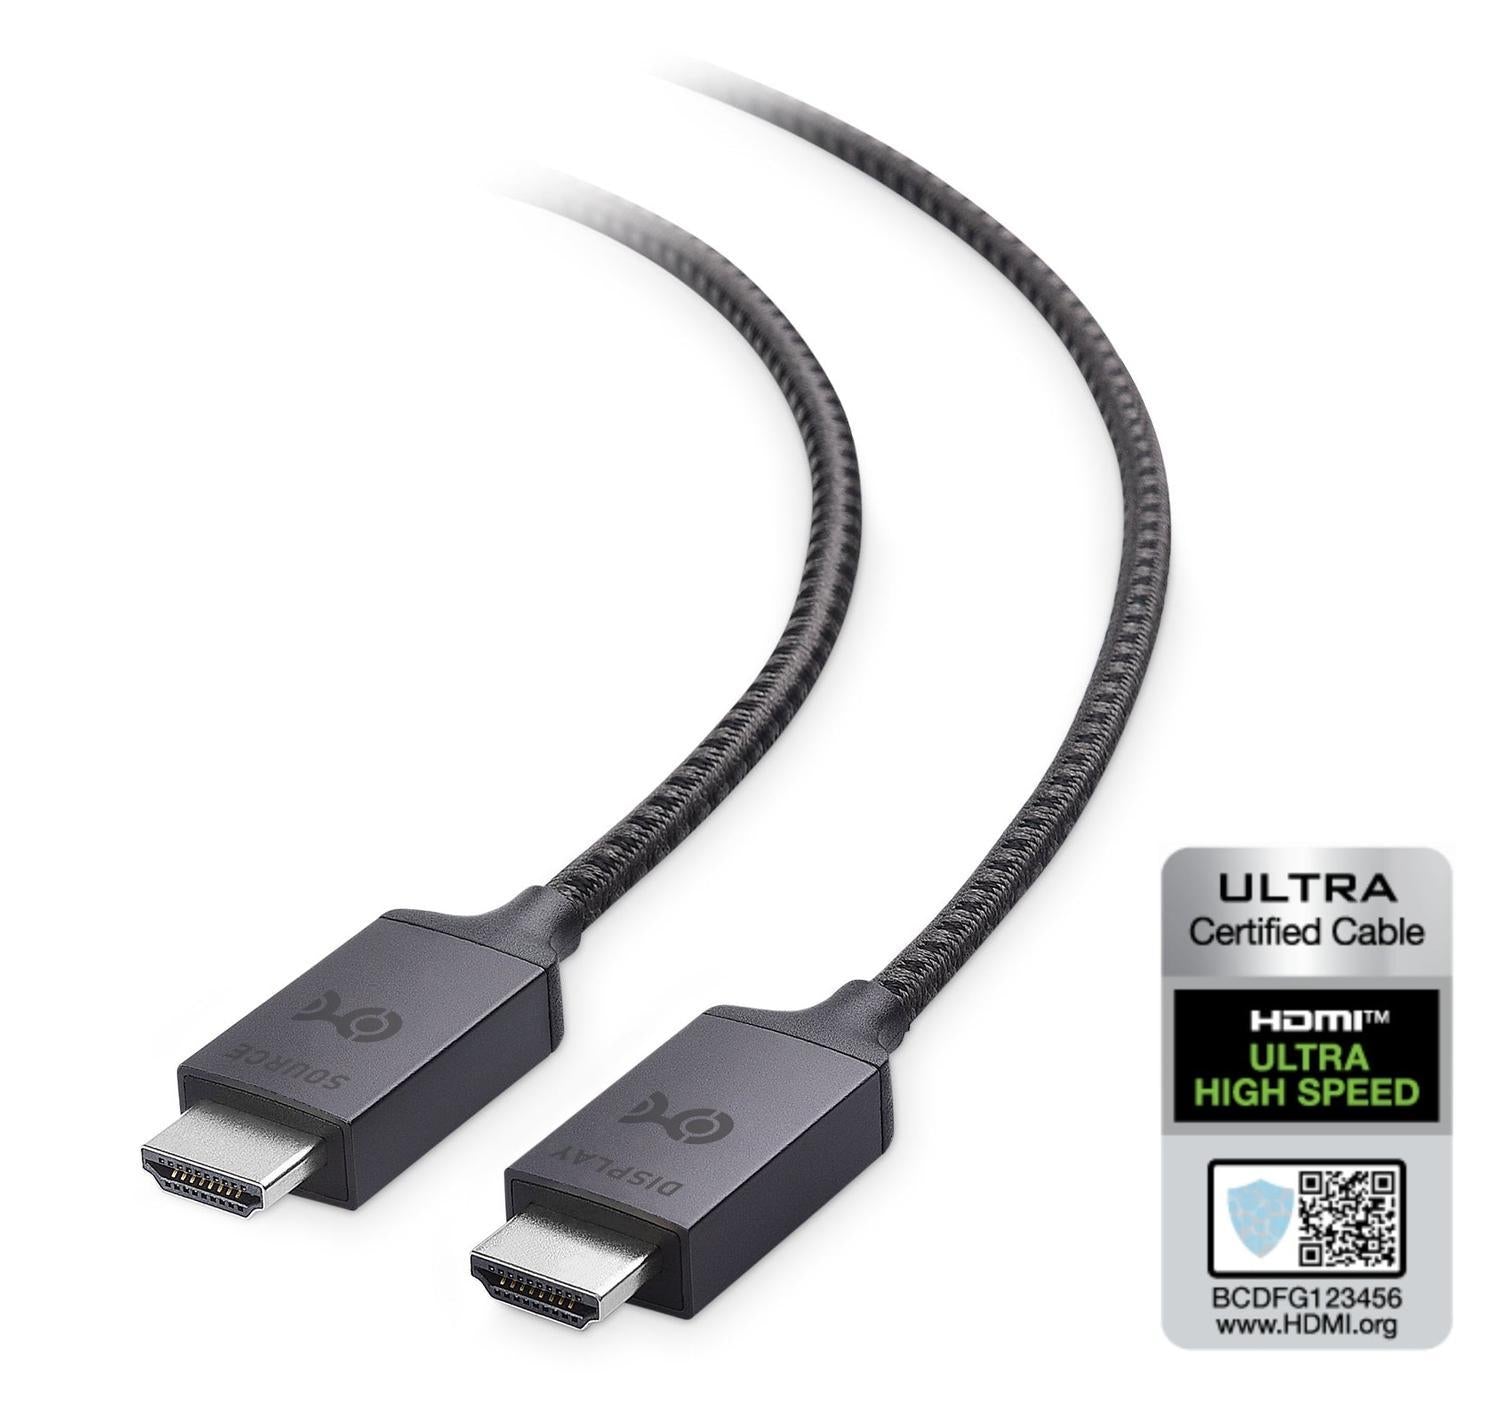 Cable Matters certificeret Ultra High Speed HDMI2.1 aktivt AOC optisk fiberkabel 10m 8K 60Hz 4K 120Hz 48Gbps Dyn. HDR eARC VRR -kompatibelt